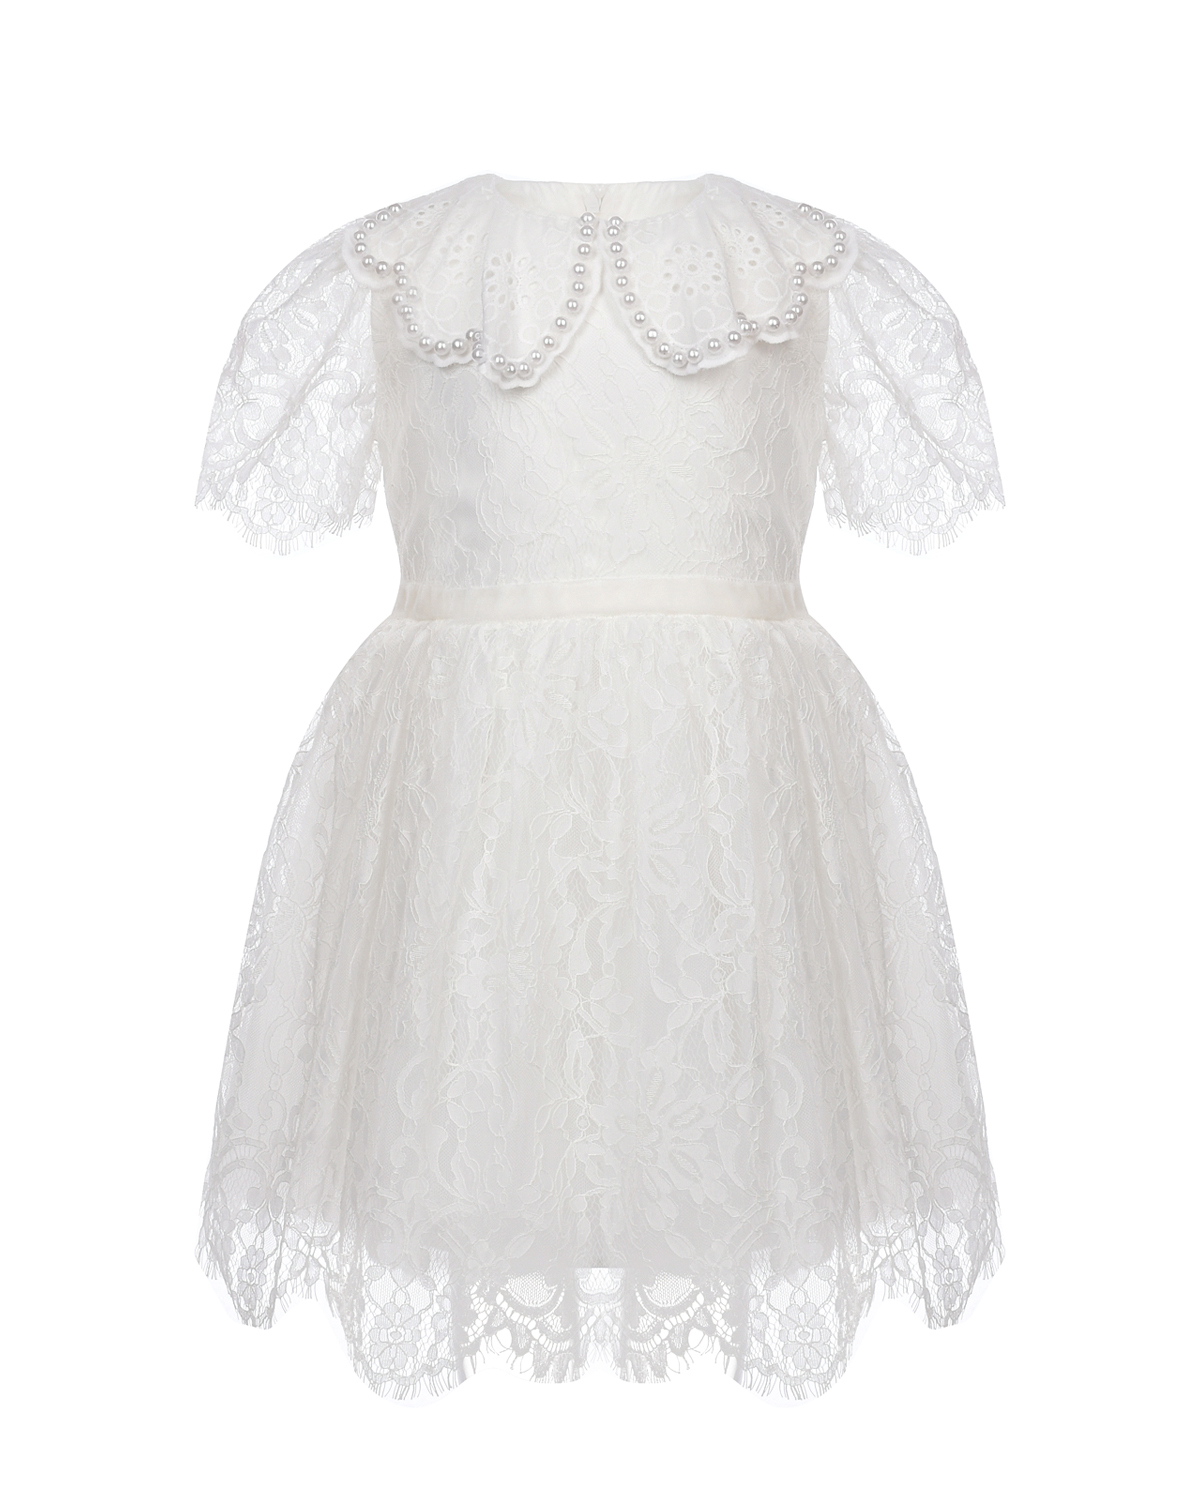 Белое платье с отделкой кружевом и бусинами Eirene детское